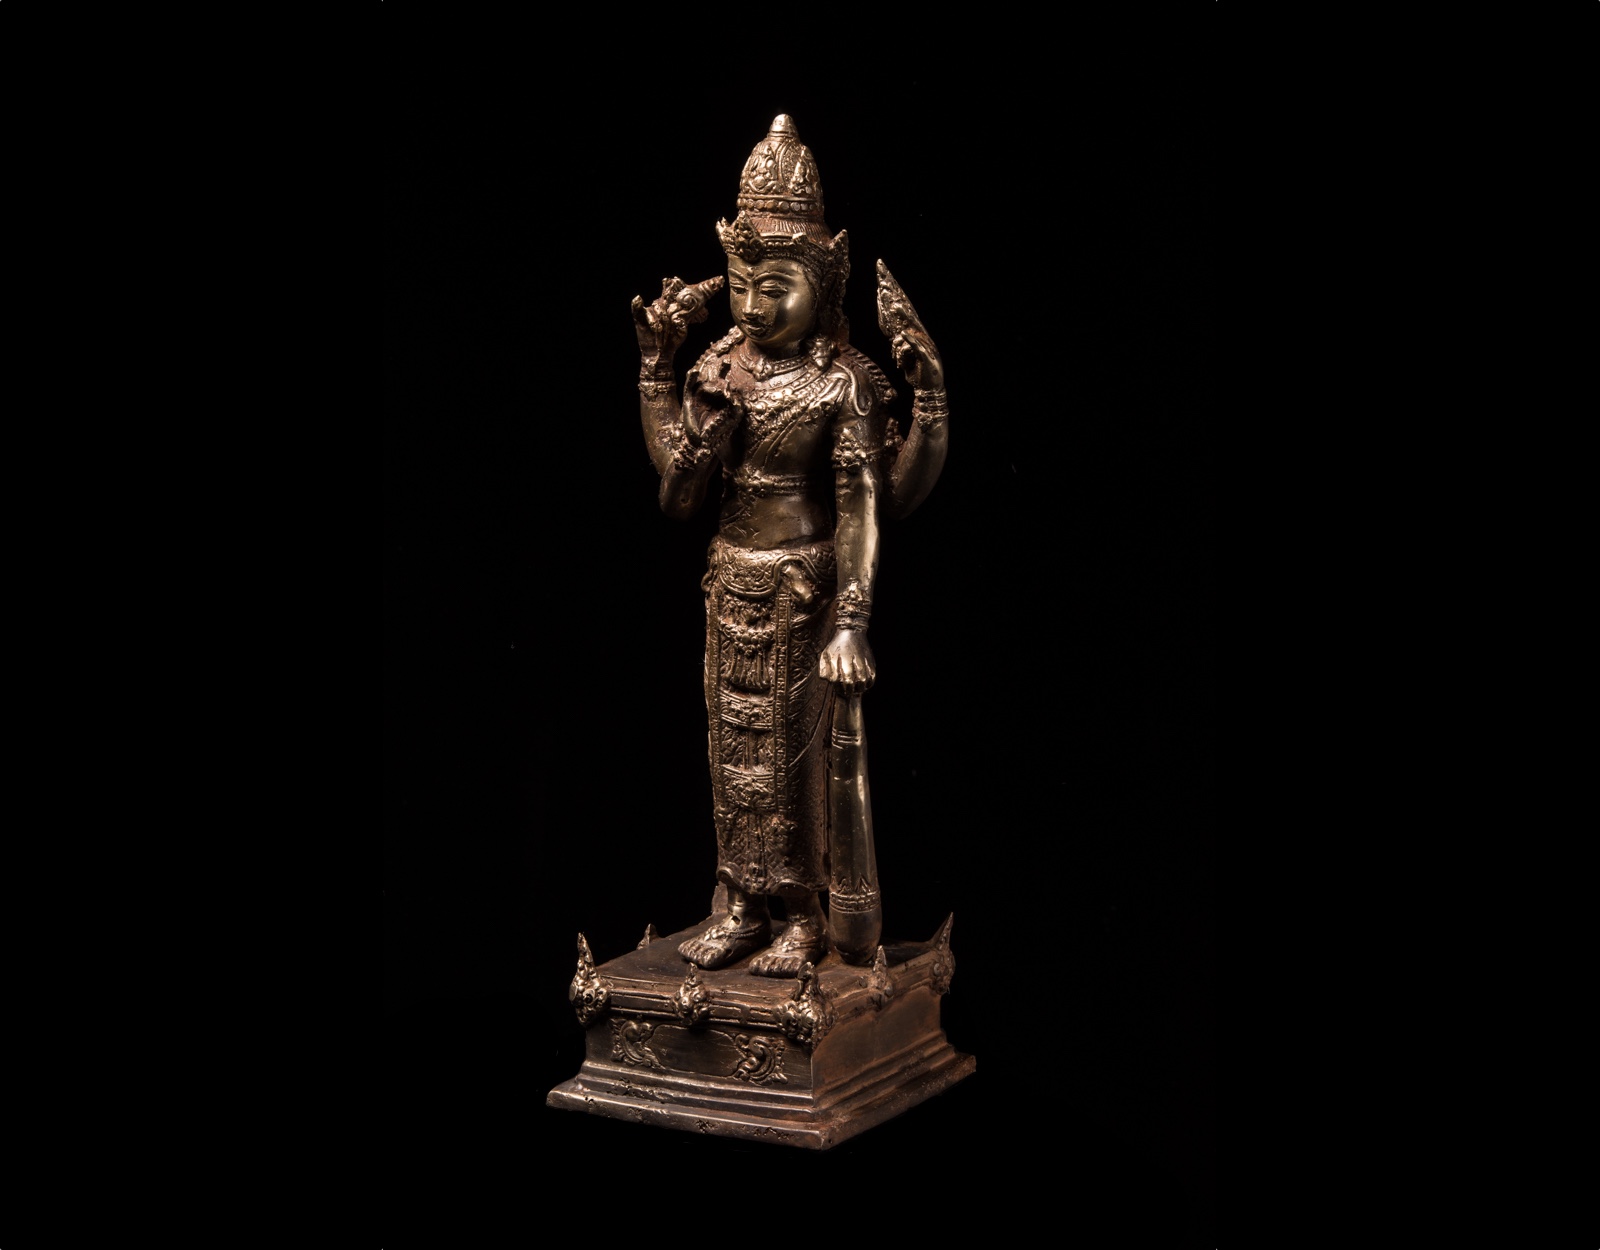 Антикварная статуэтка Вишну, бронза. фото VipKeris